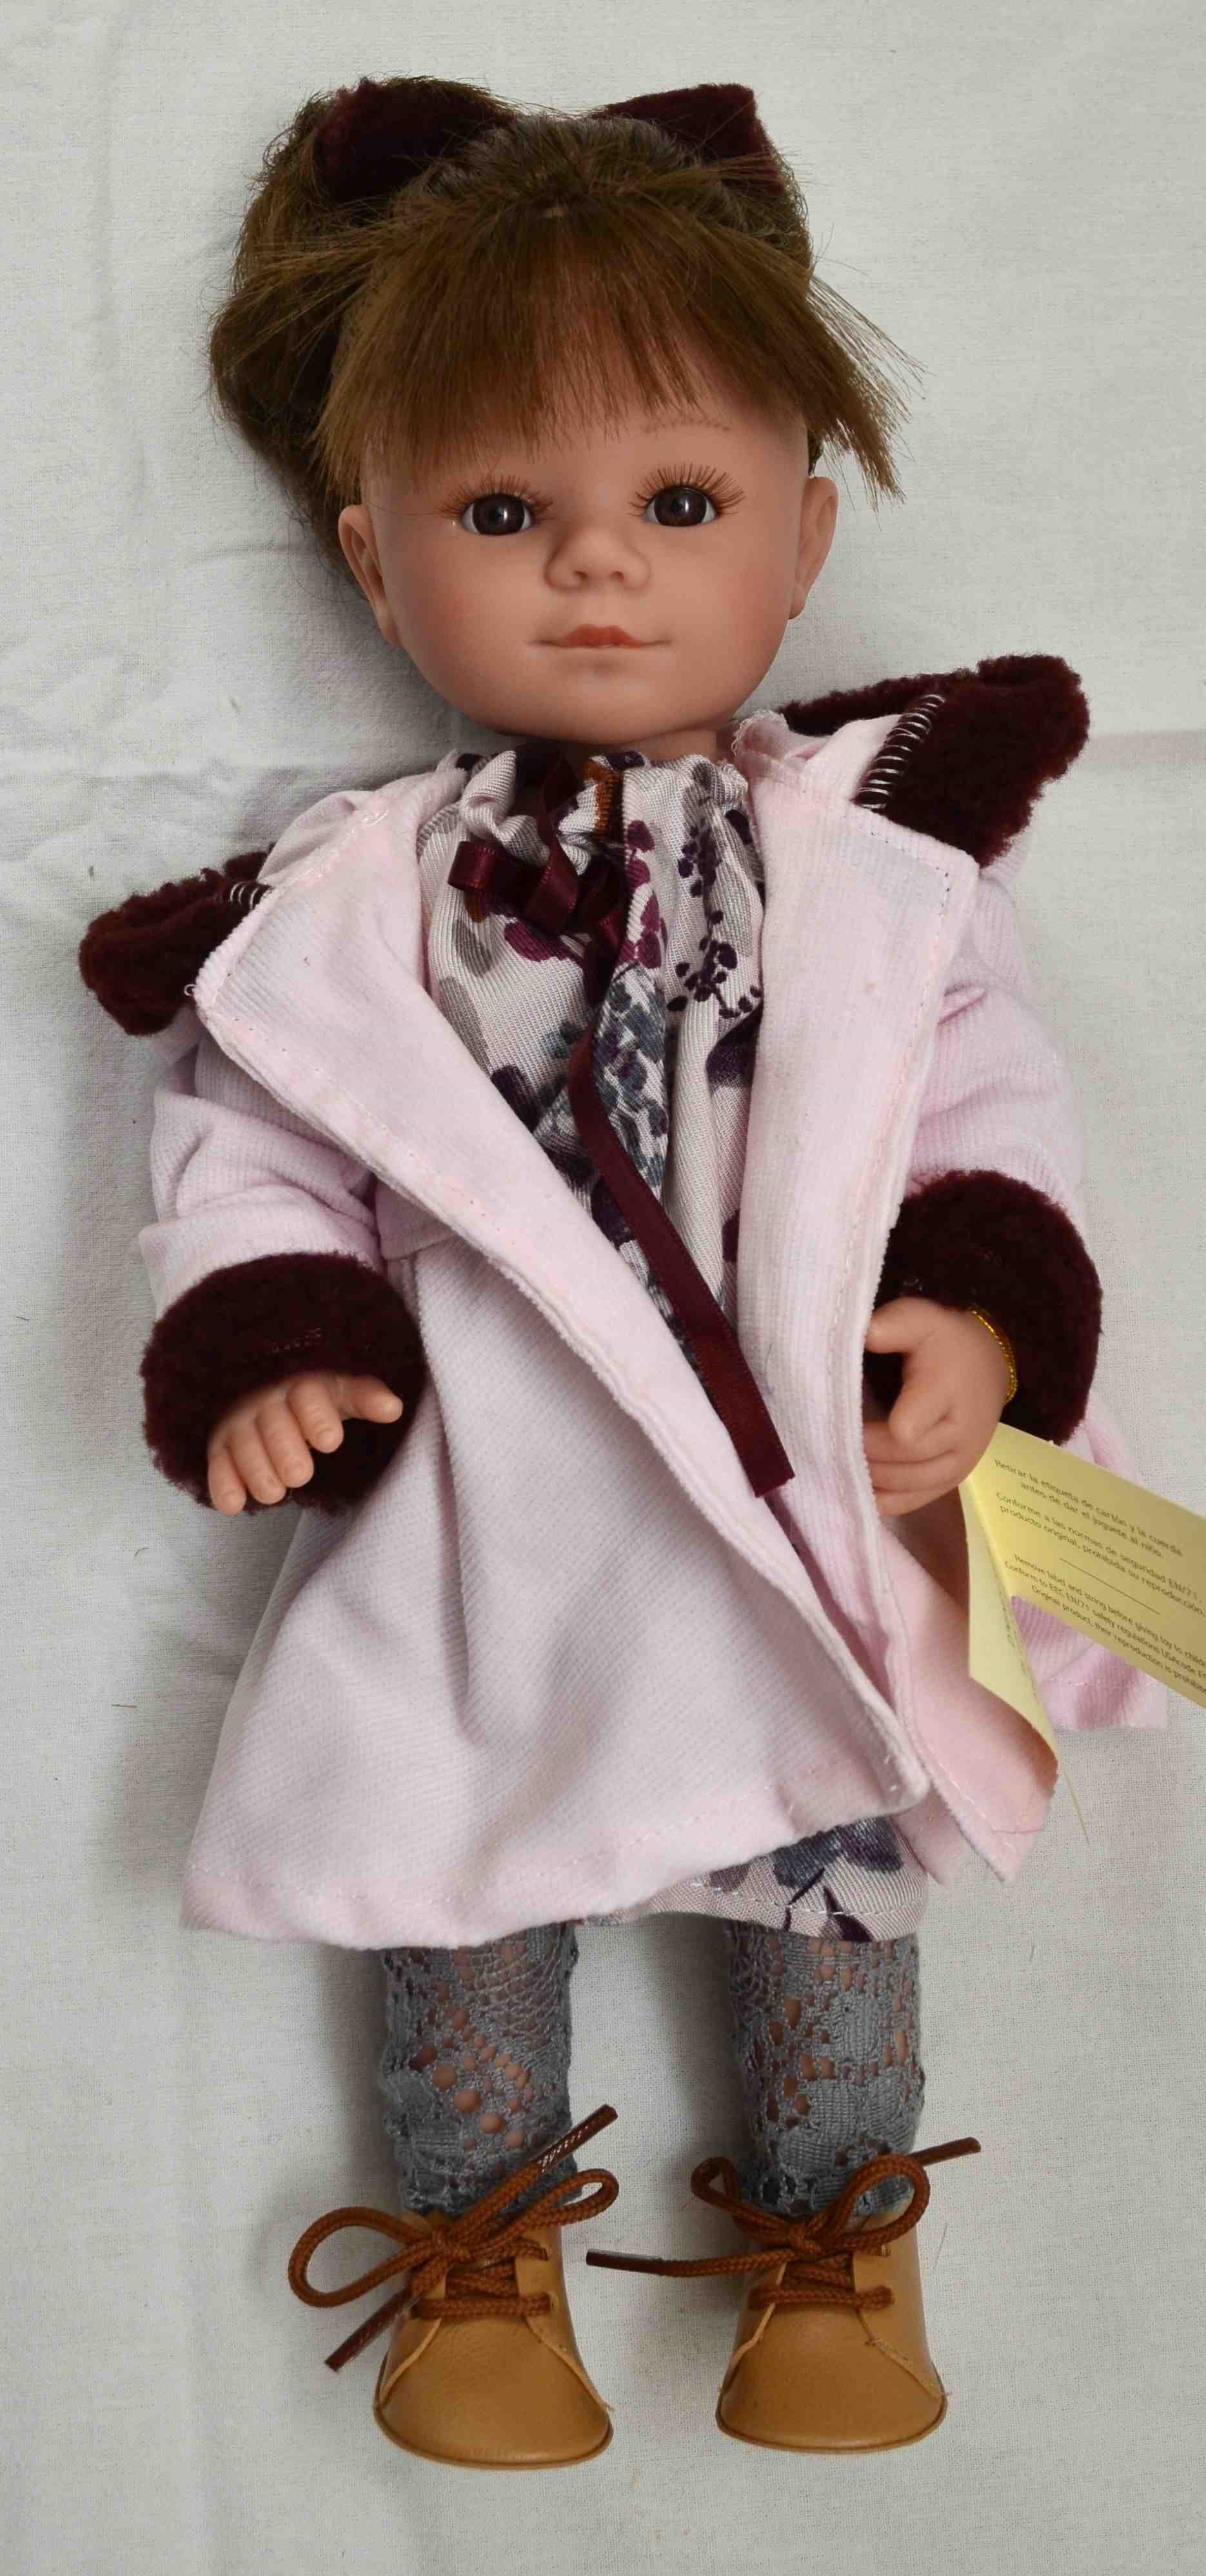 34 cm— Realistická panenka - holčička - Bětka od firmy D´nenes